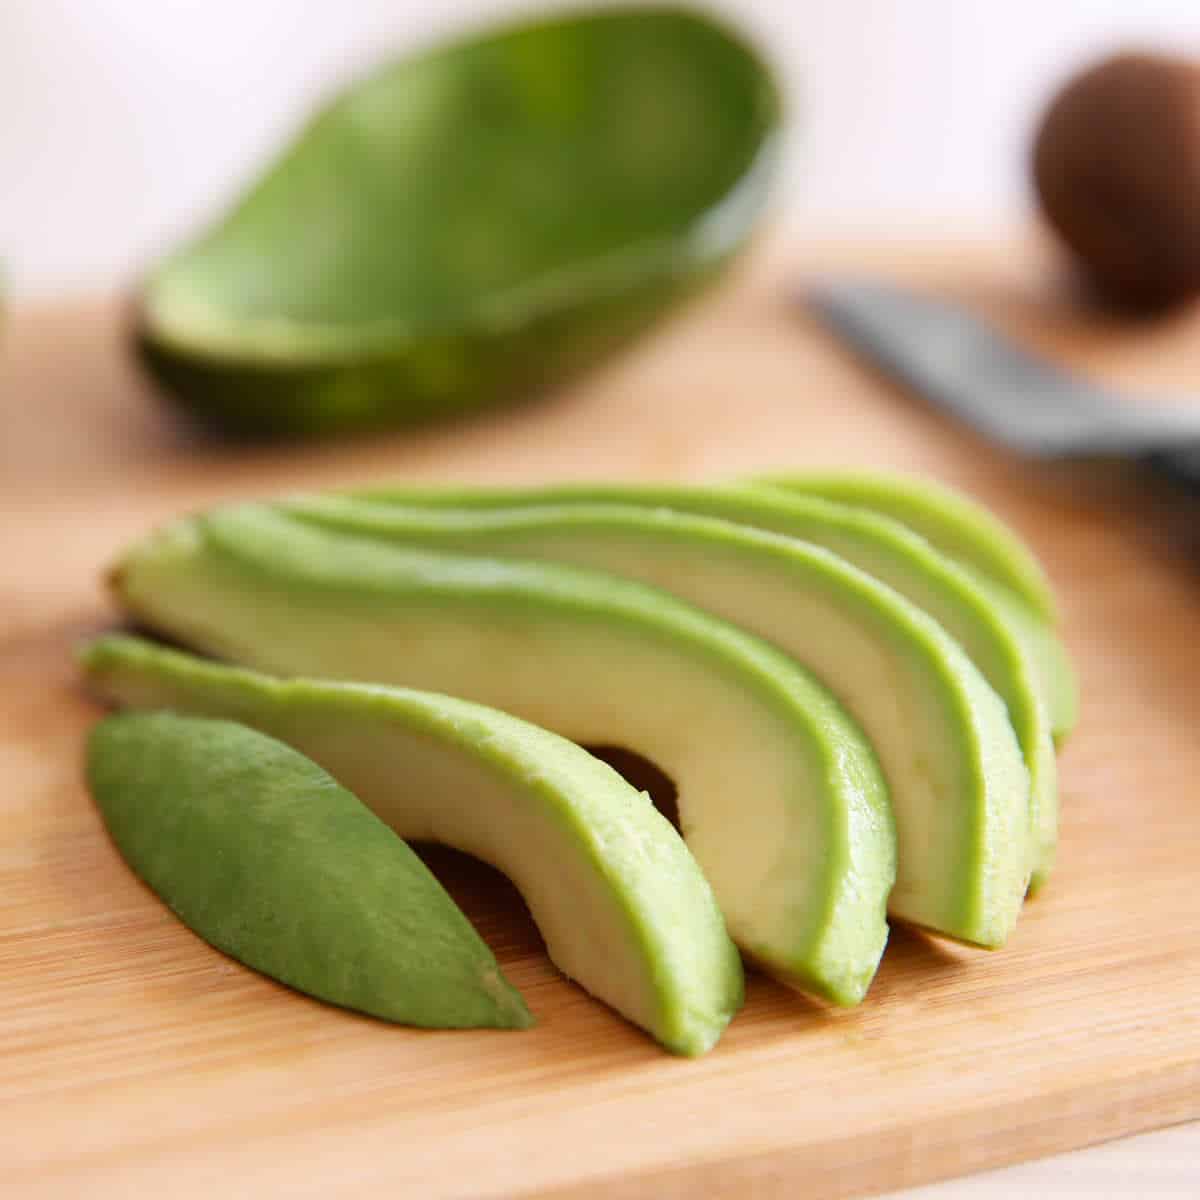 Fresh sliced avocado on cutting board.